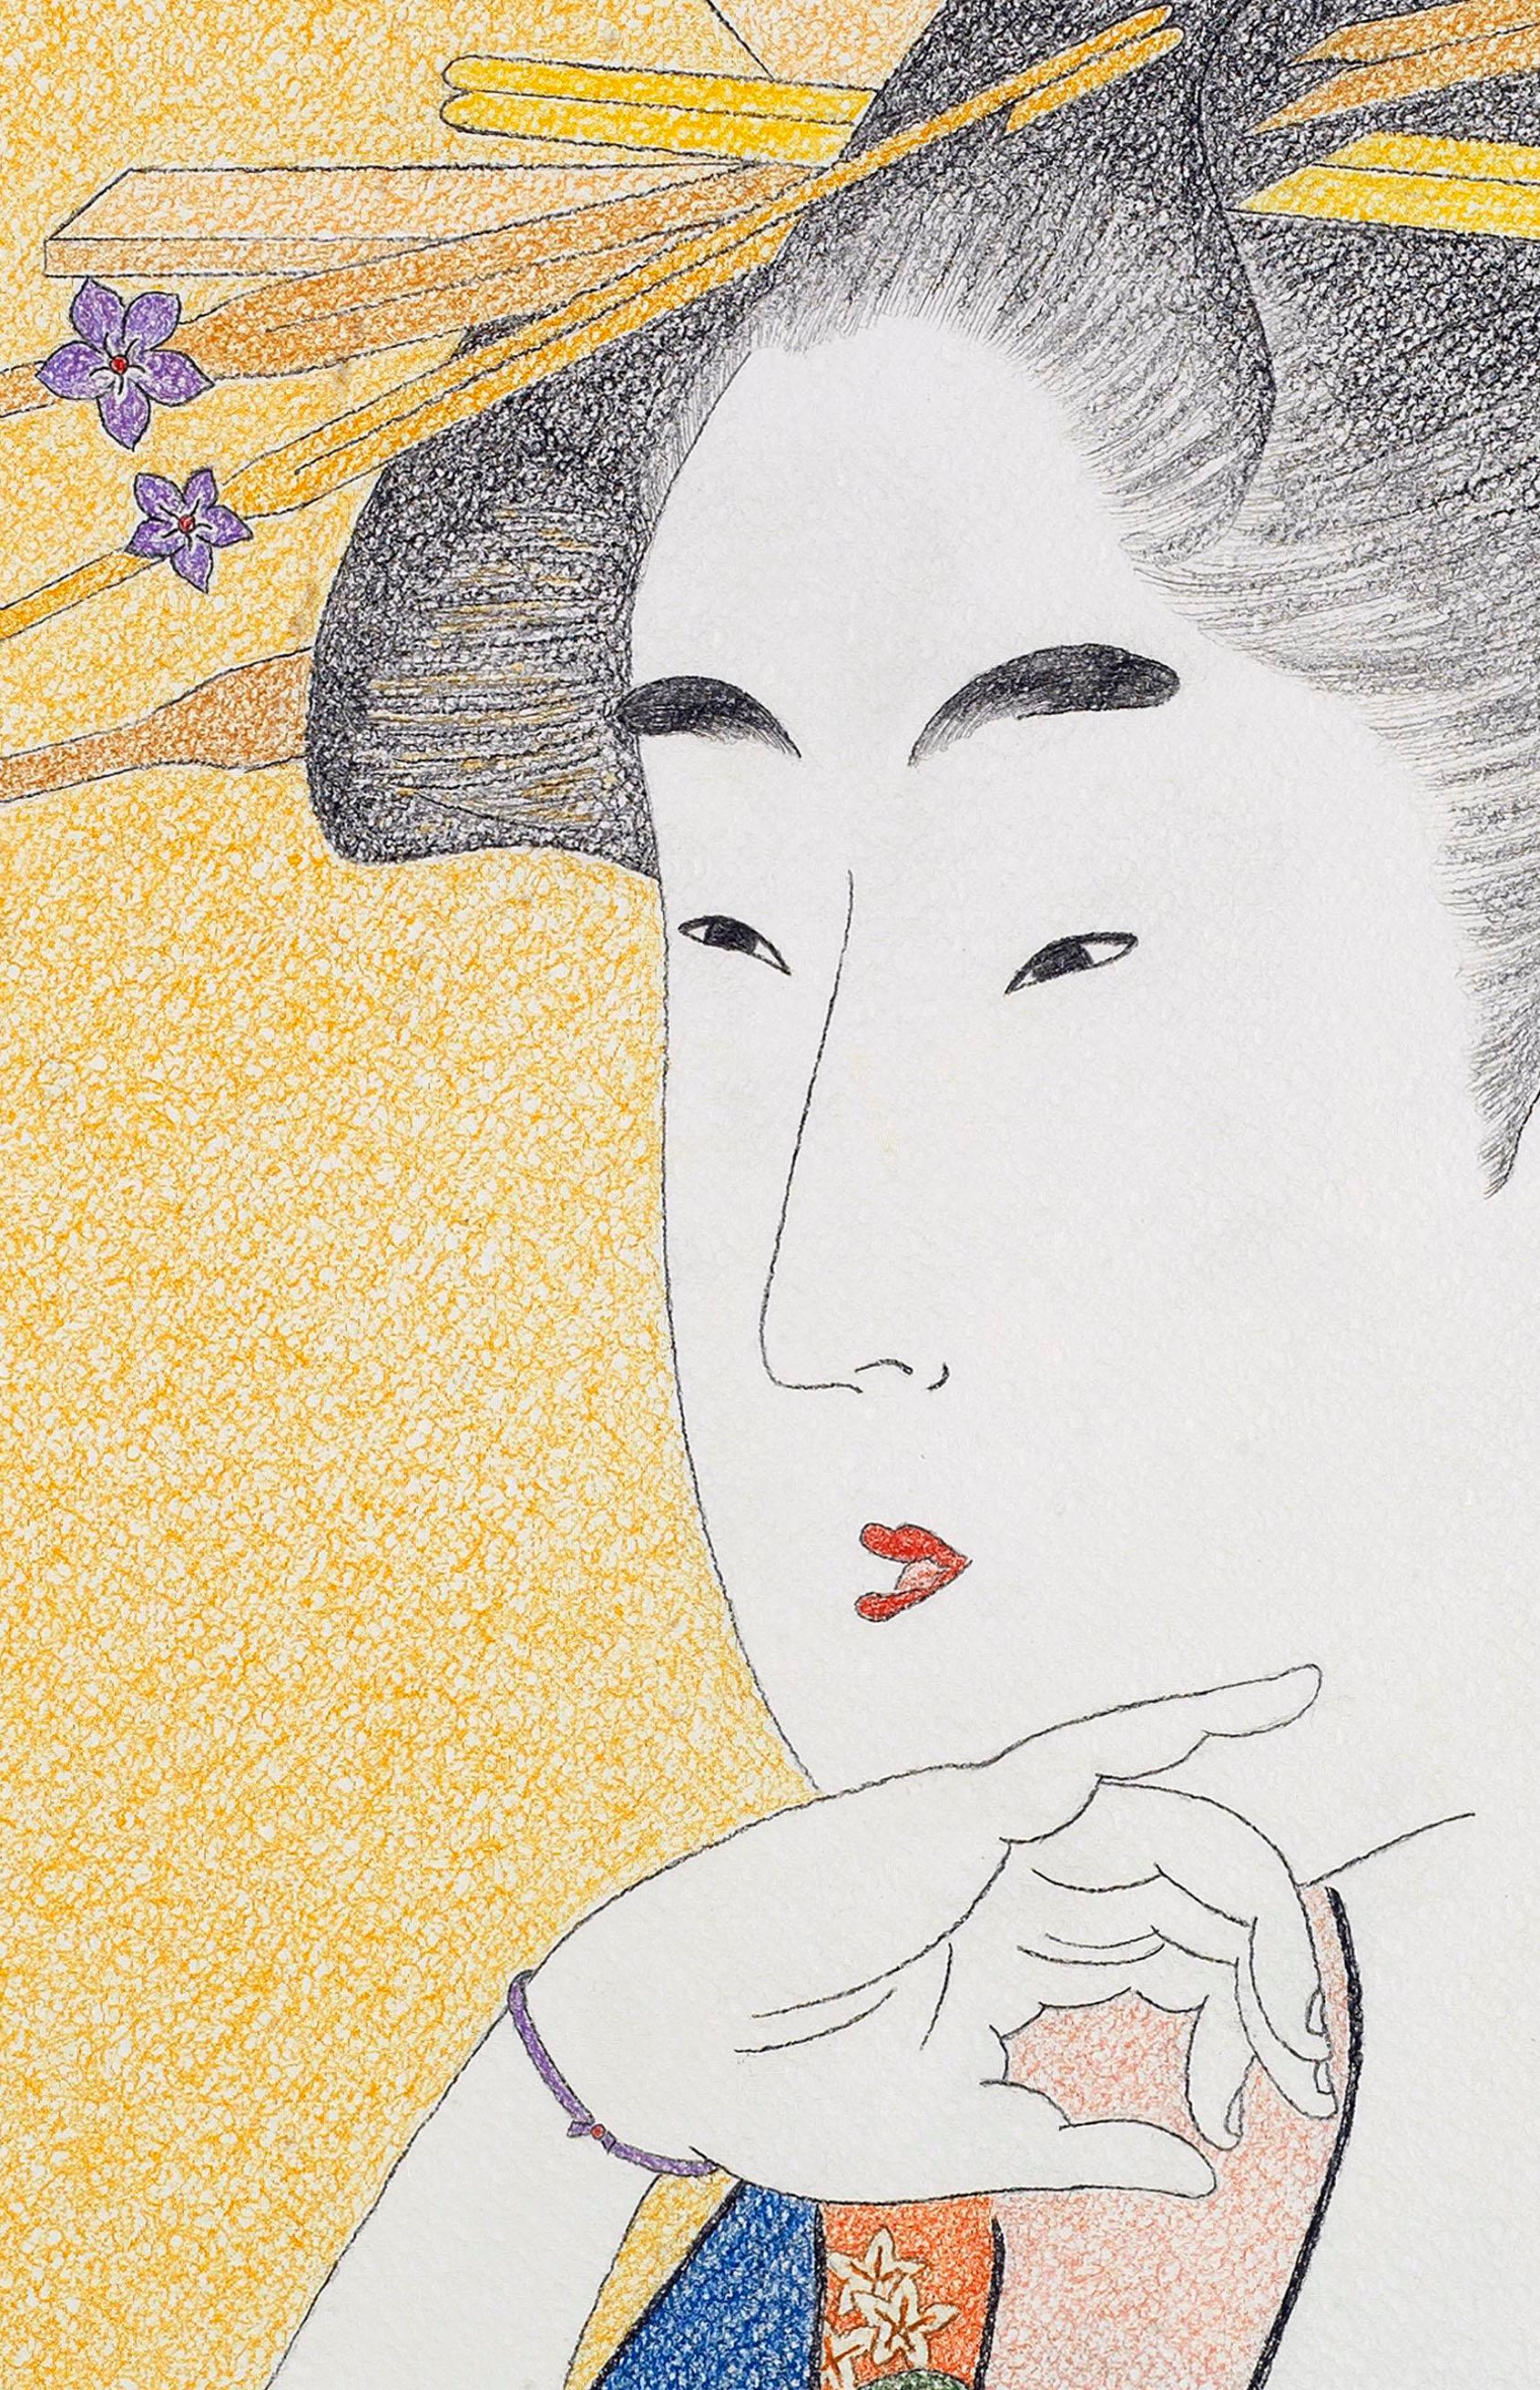 Bijin-ga série XXIX (Nº 29)

Titre : Bijin Ôkubi

Portrait en buste d'une beauté japonaise, représentée avec un geste gracieux de la main et une coiffe ornée. Ses traits doux et ronds contrastent avec les angles vifs et colorés des cols de son